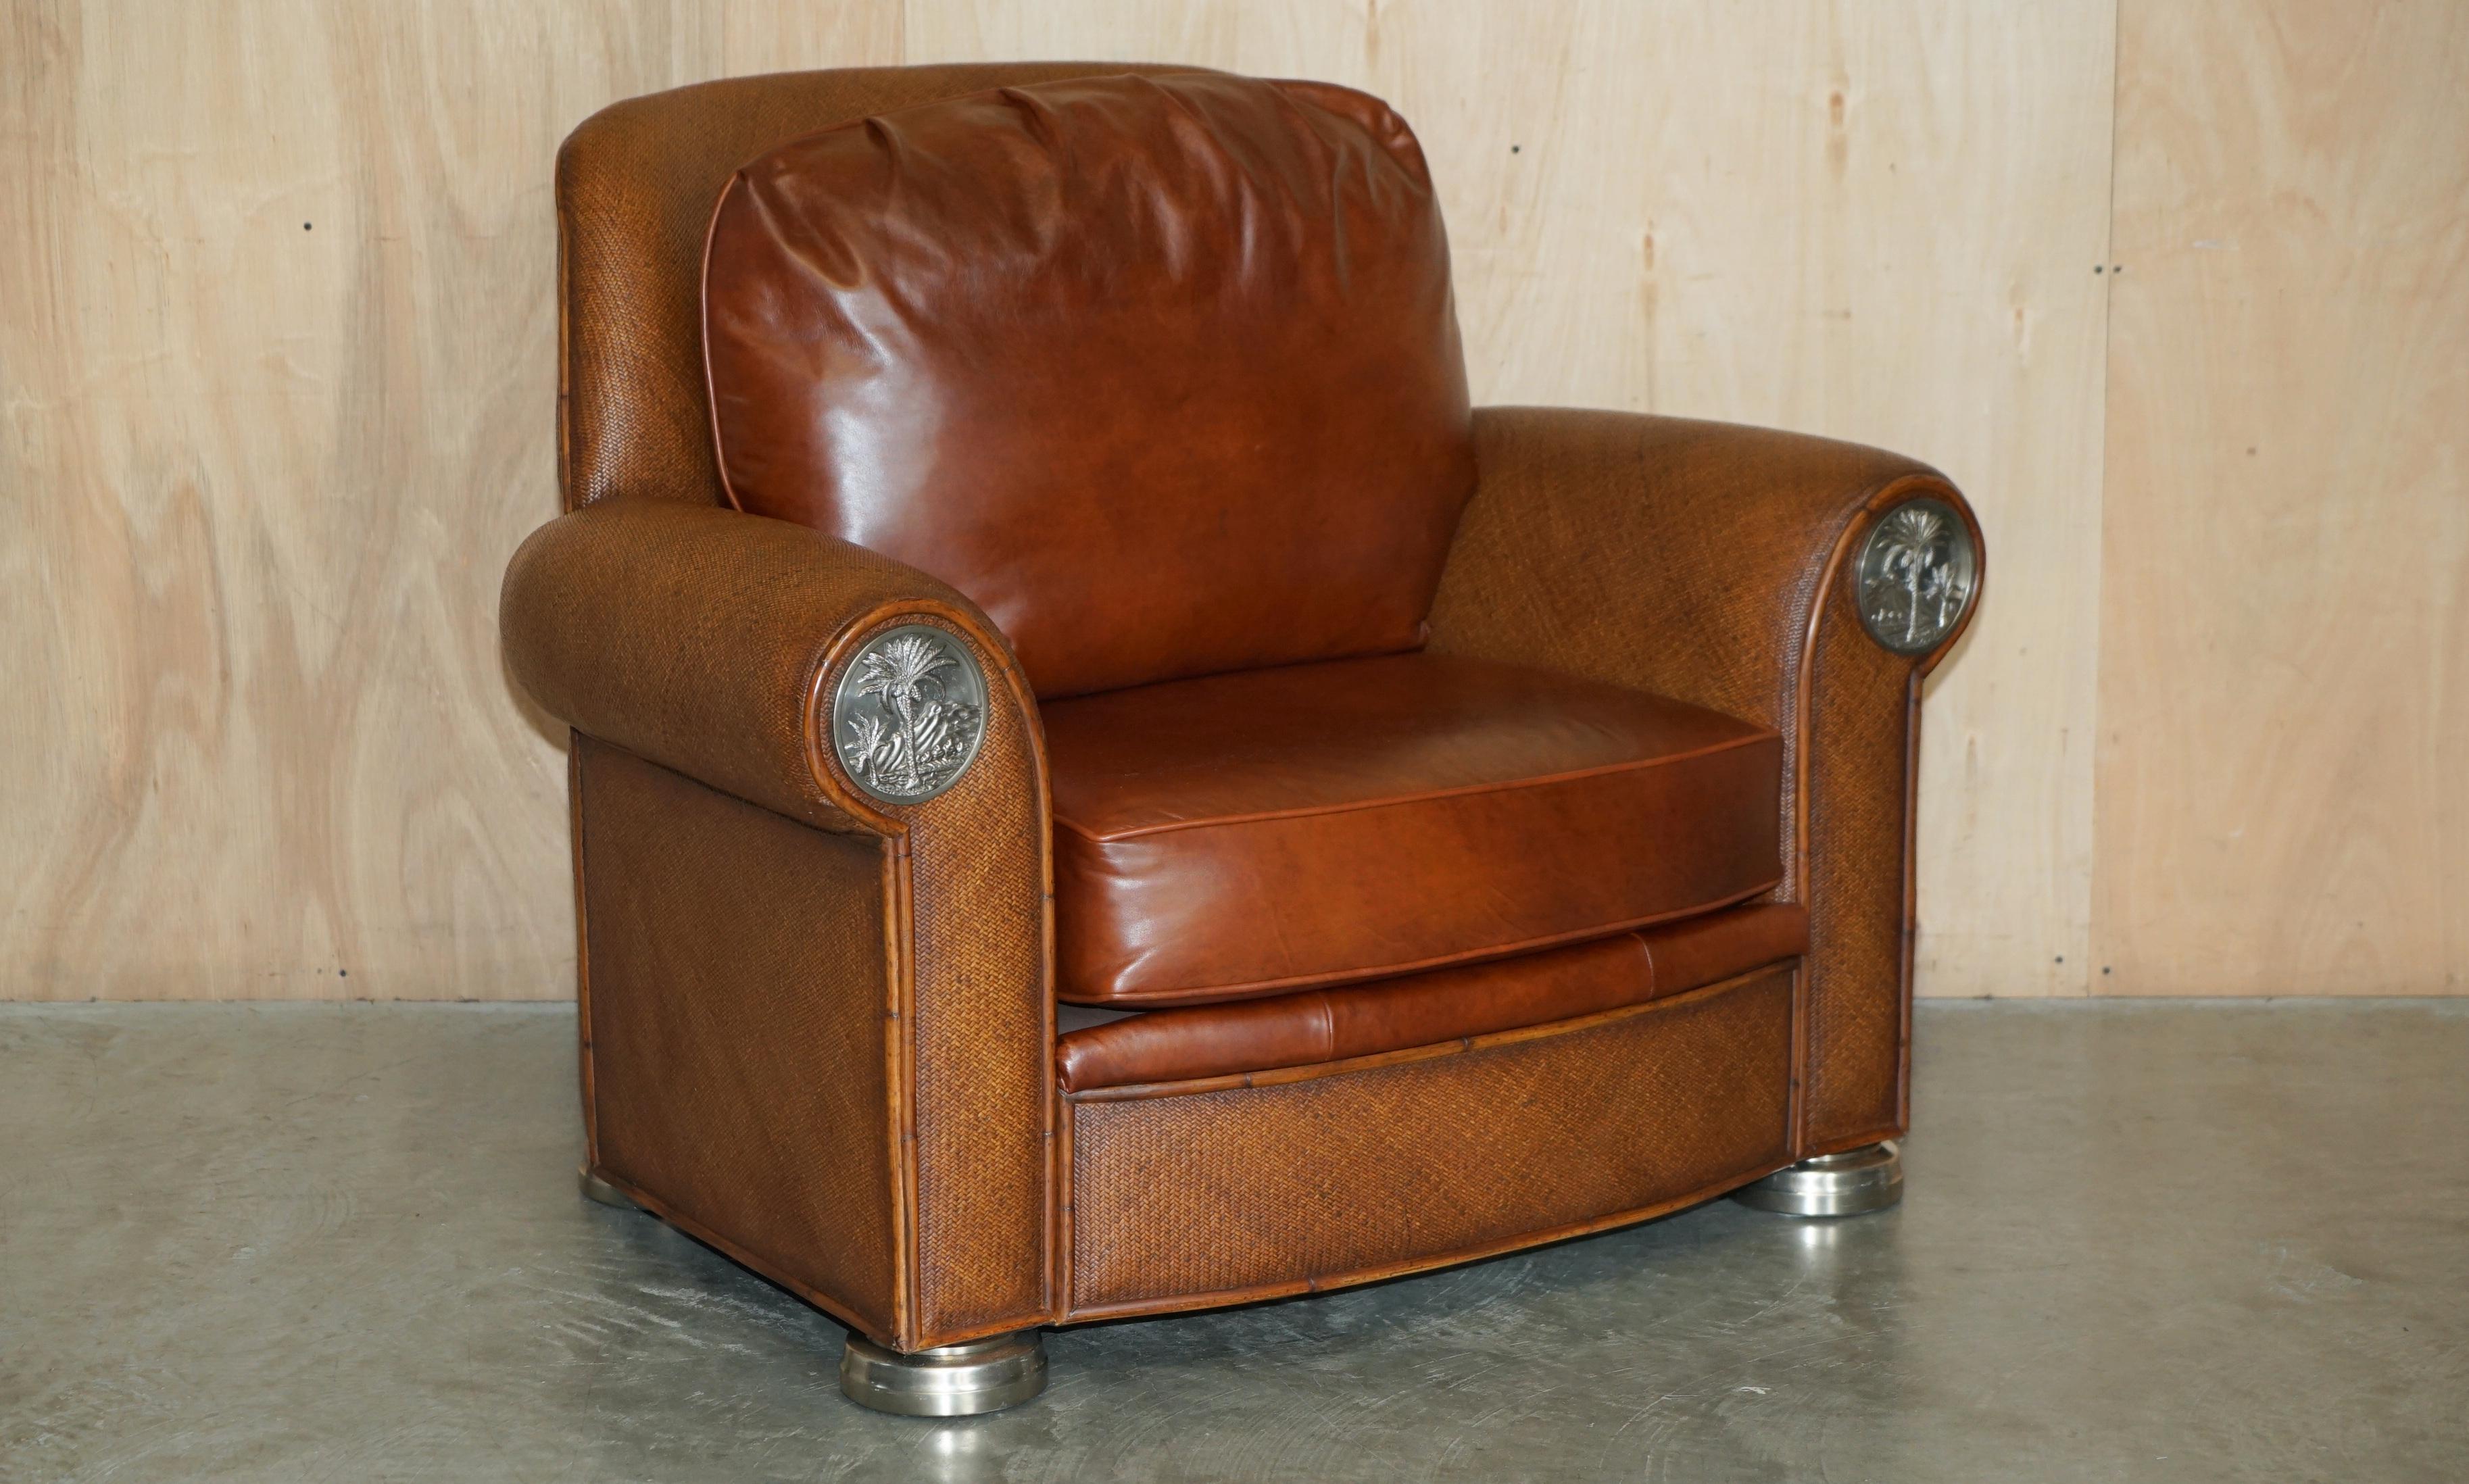 Nous avons le plaisir d'offrir à la vente cet exquis fauteuil de la Collection Sécuritaire de Thomasville avec ottoman assorti et coussins en cuir marron assis sur des cadres tissés qui font partie d'une grande suite. 

J'ai une assez belle suite de